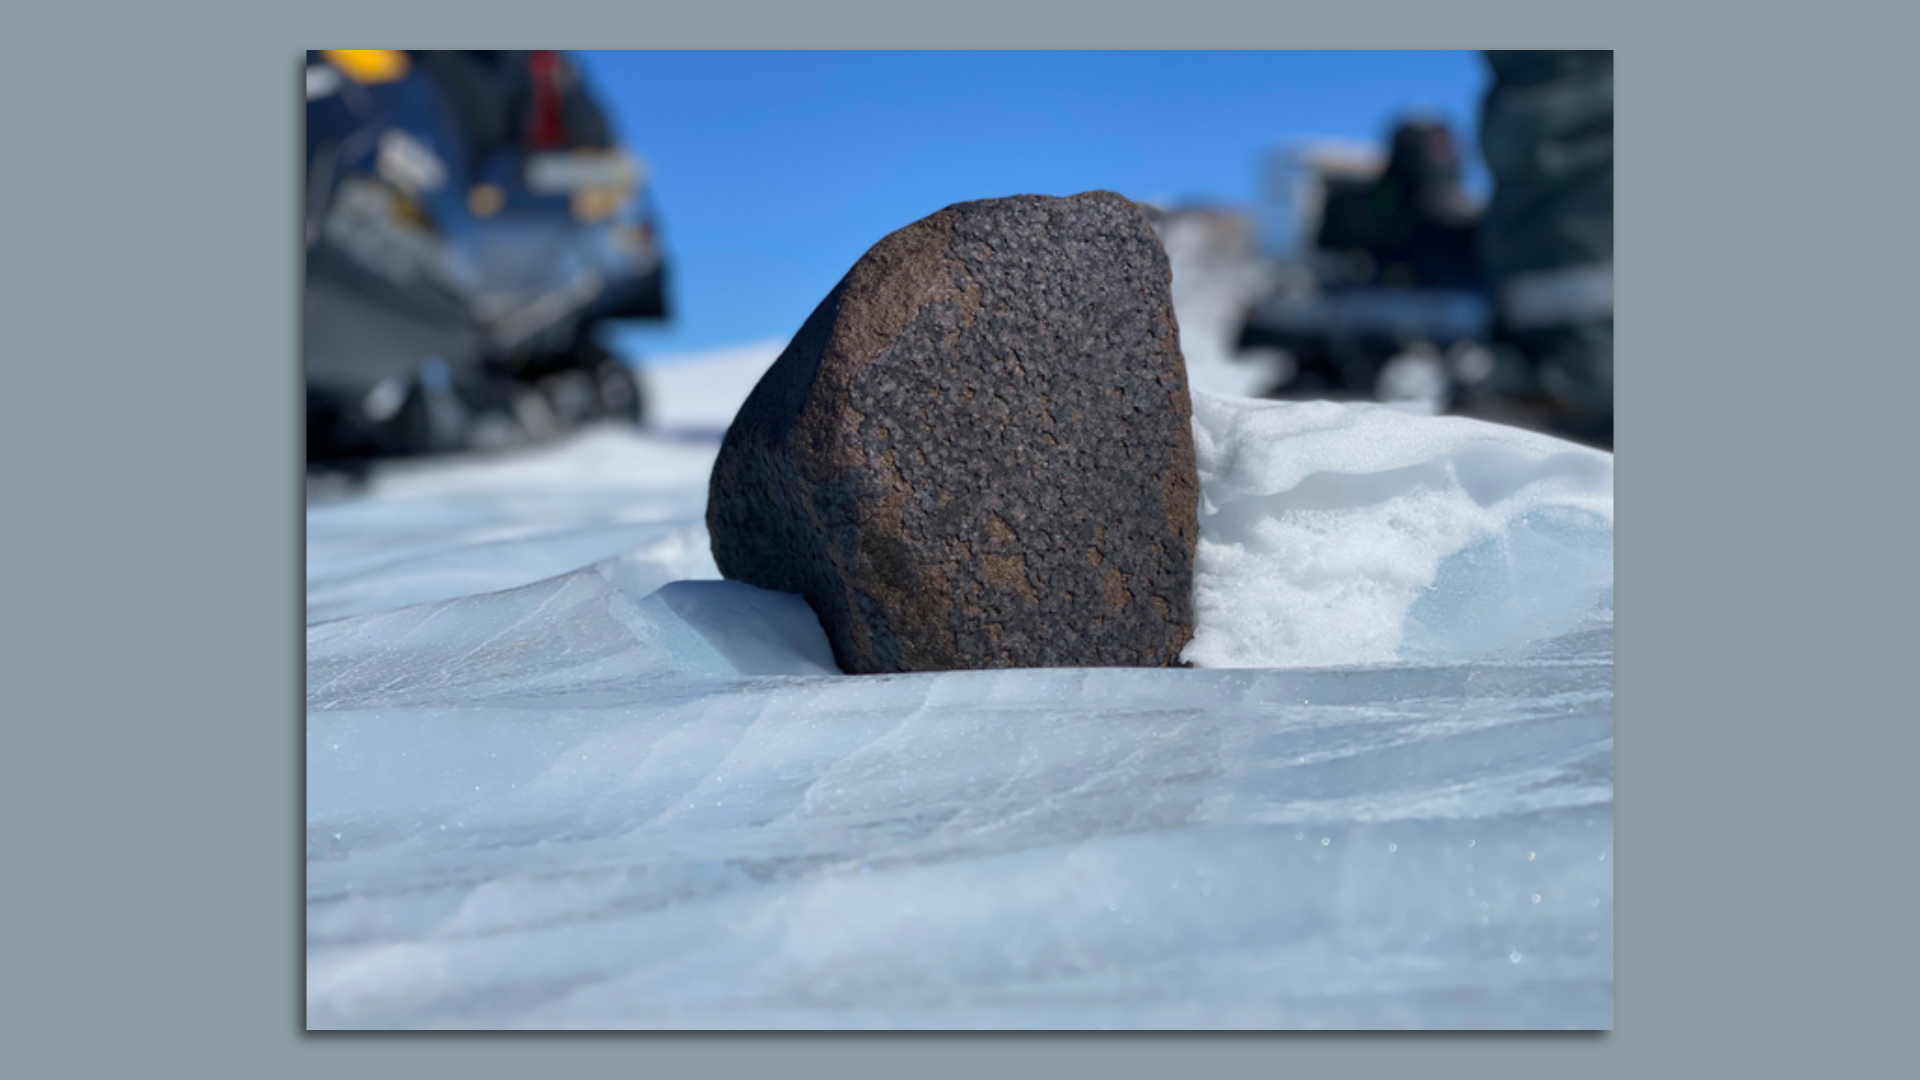 17-pound meteorite